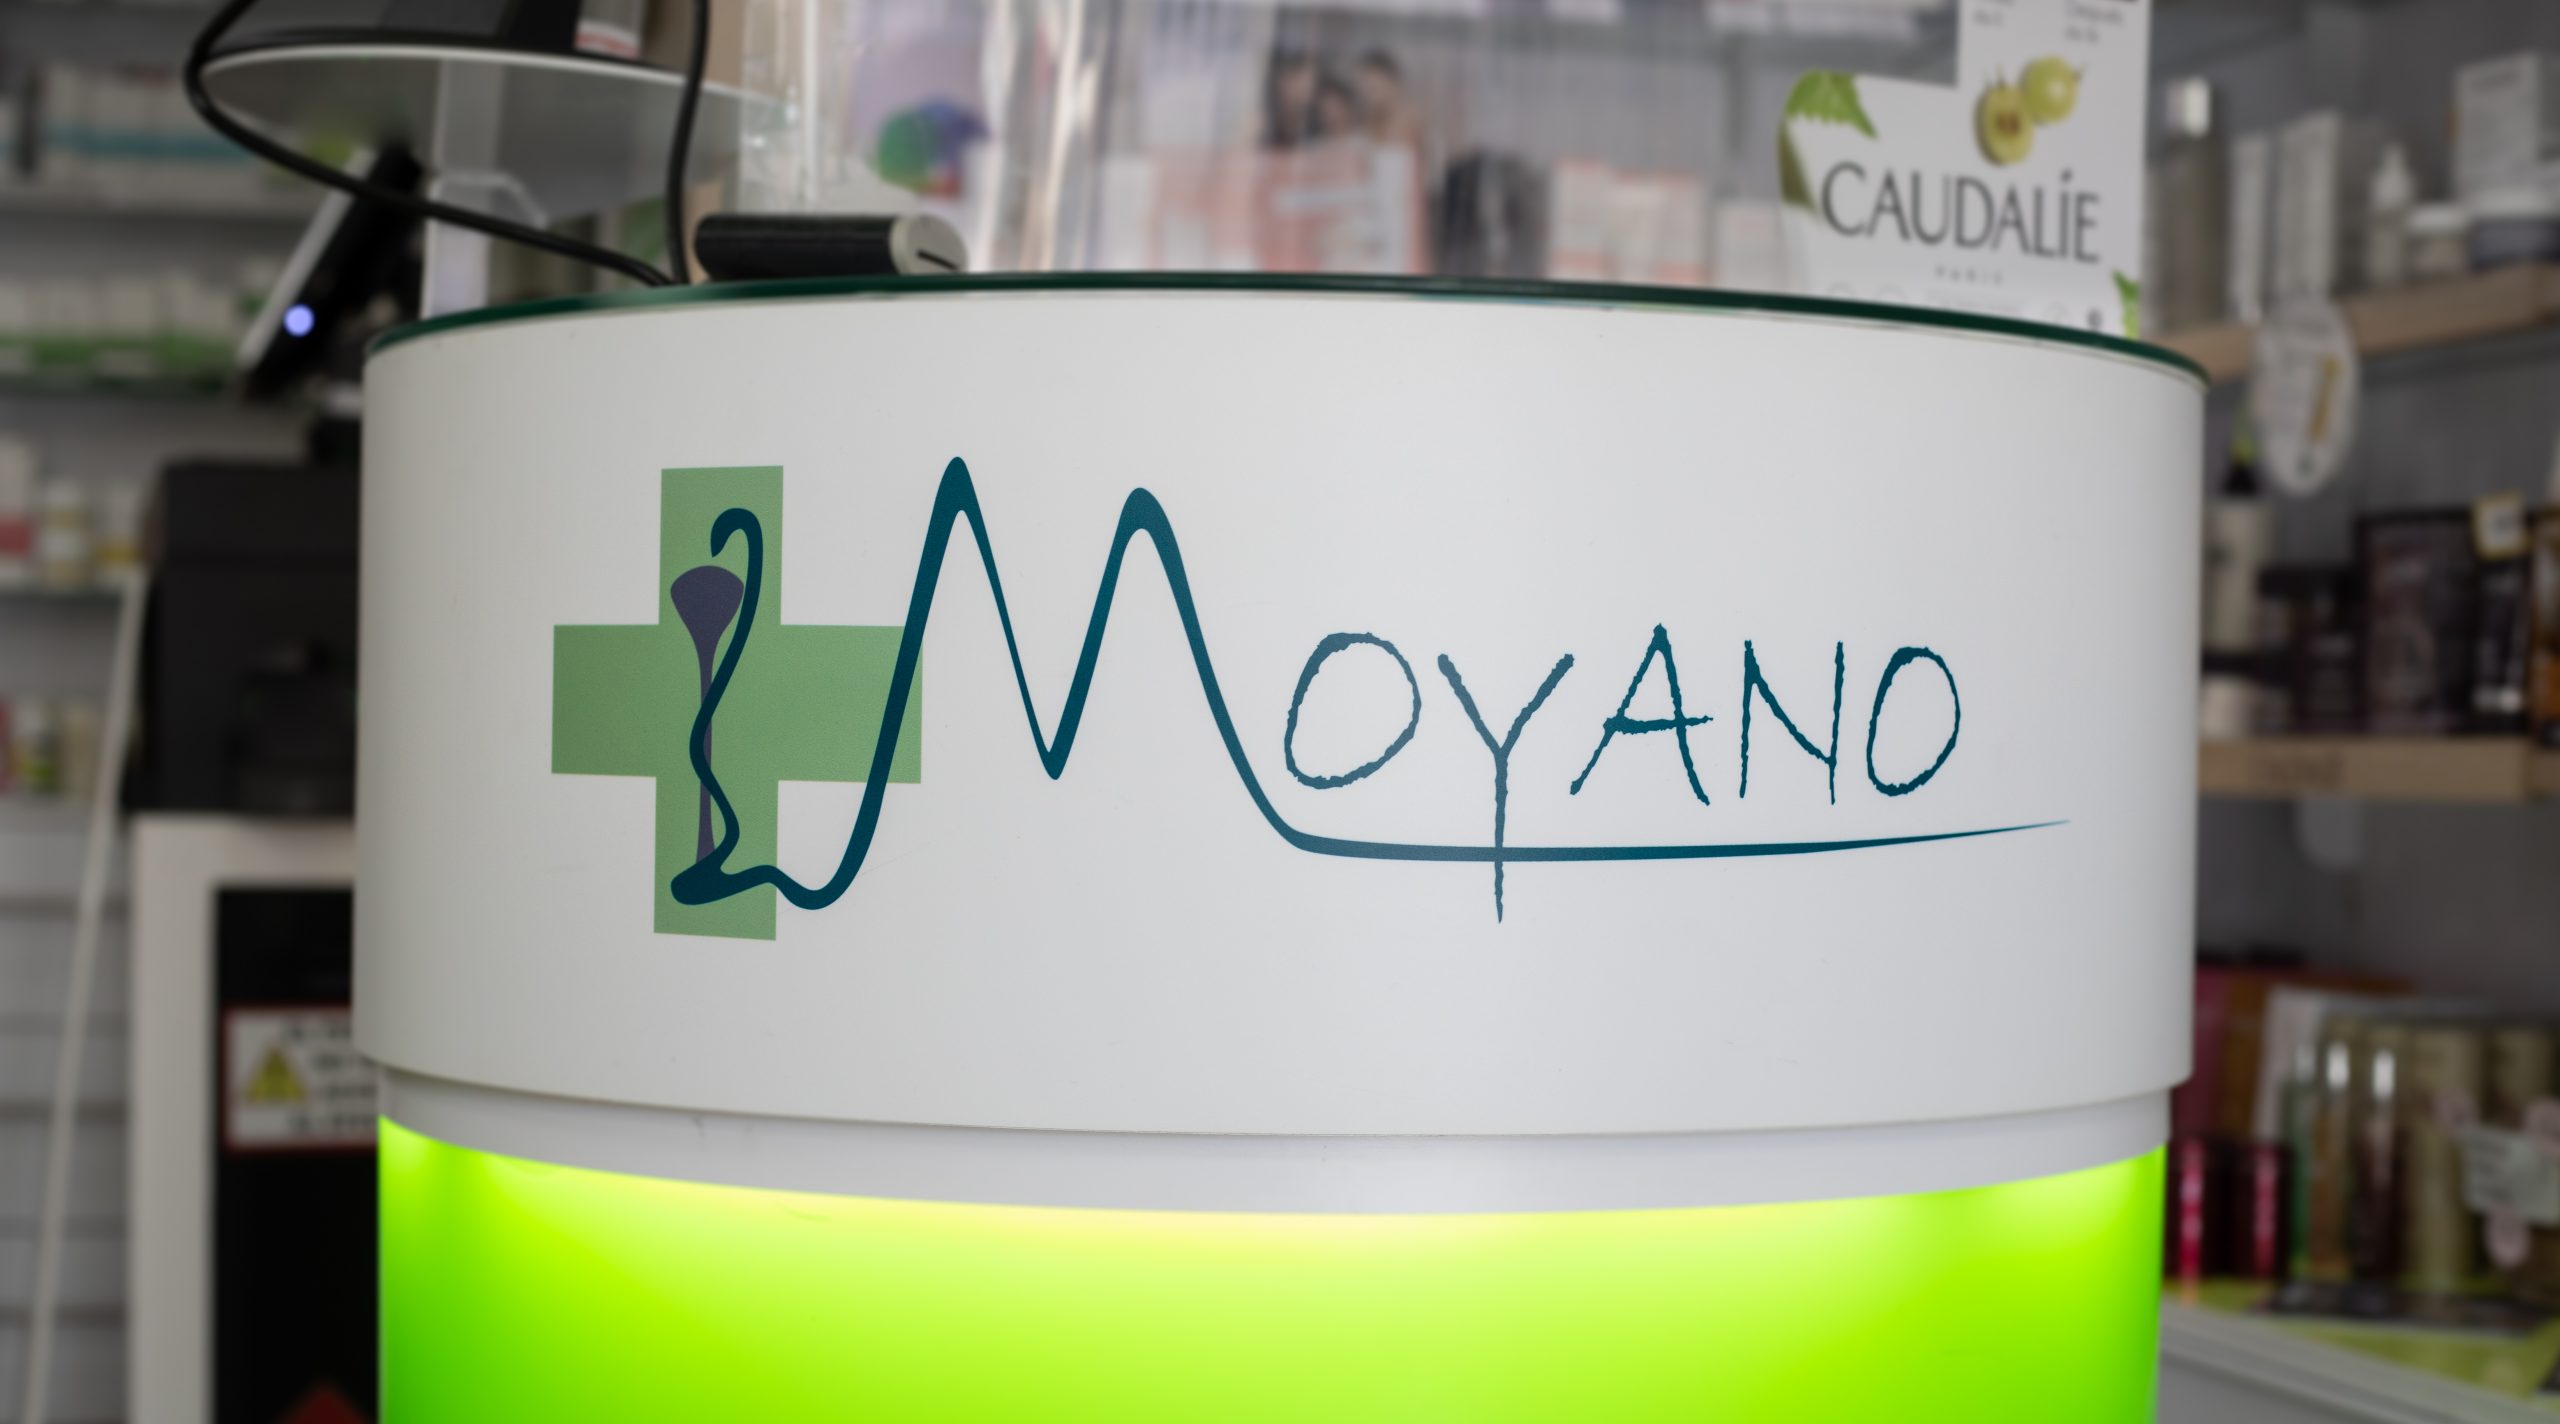 Farmacia Moyano